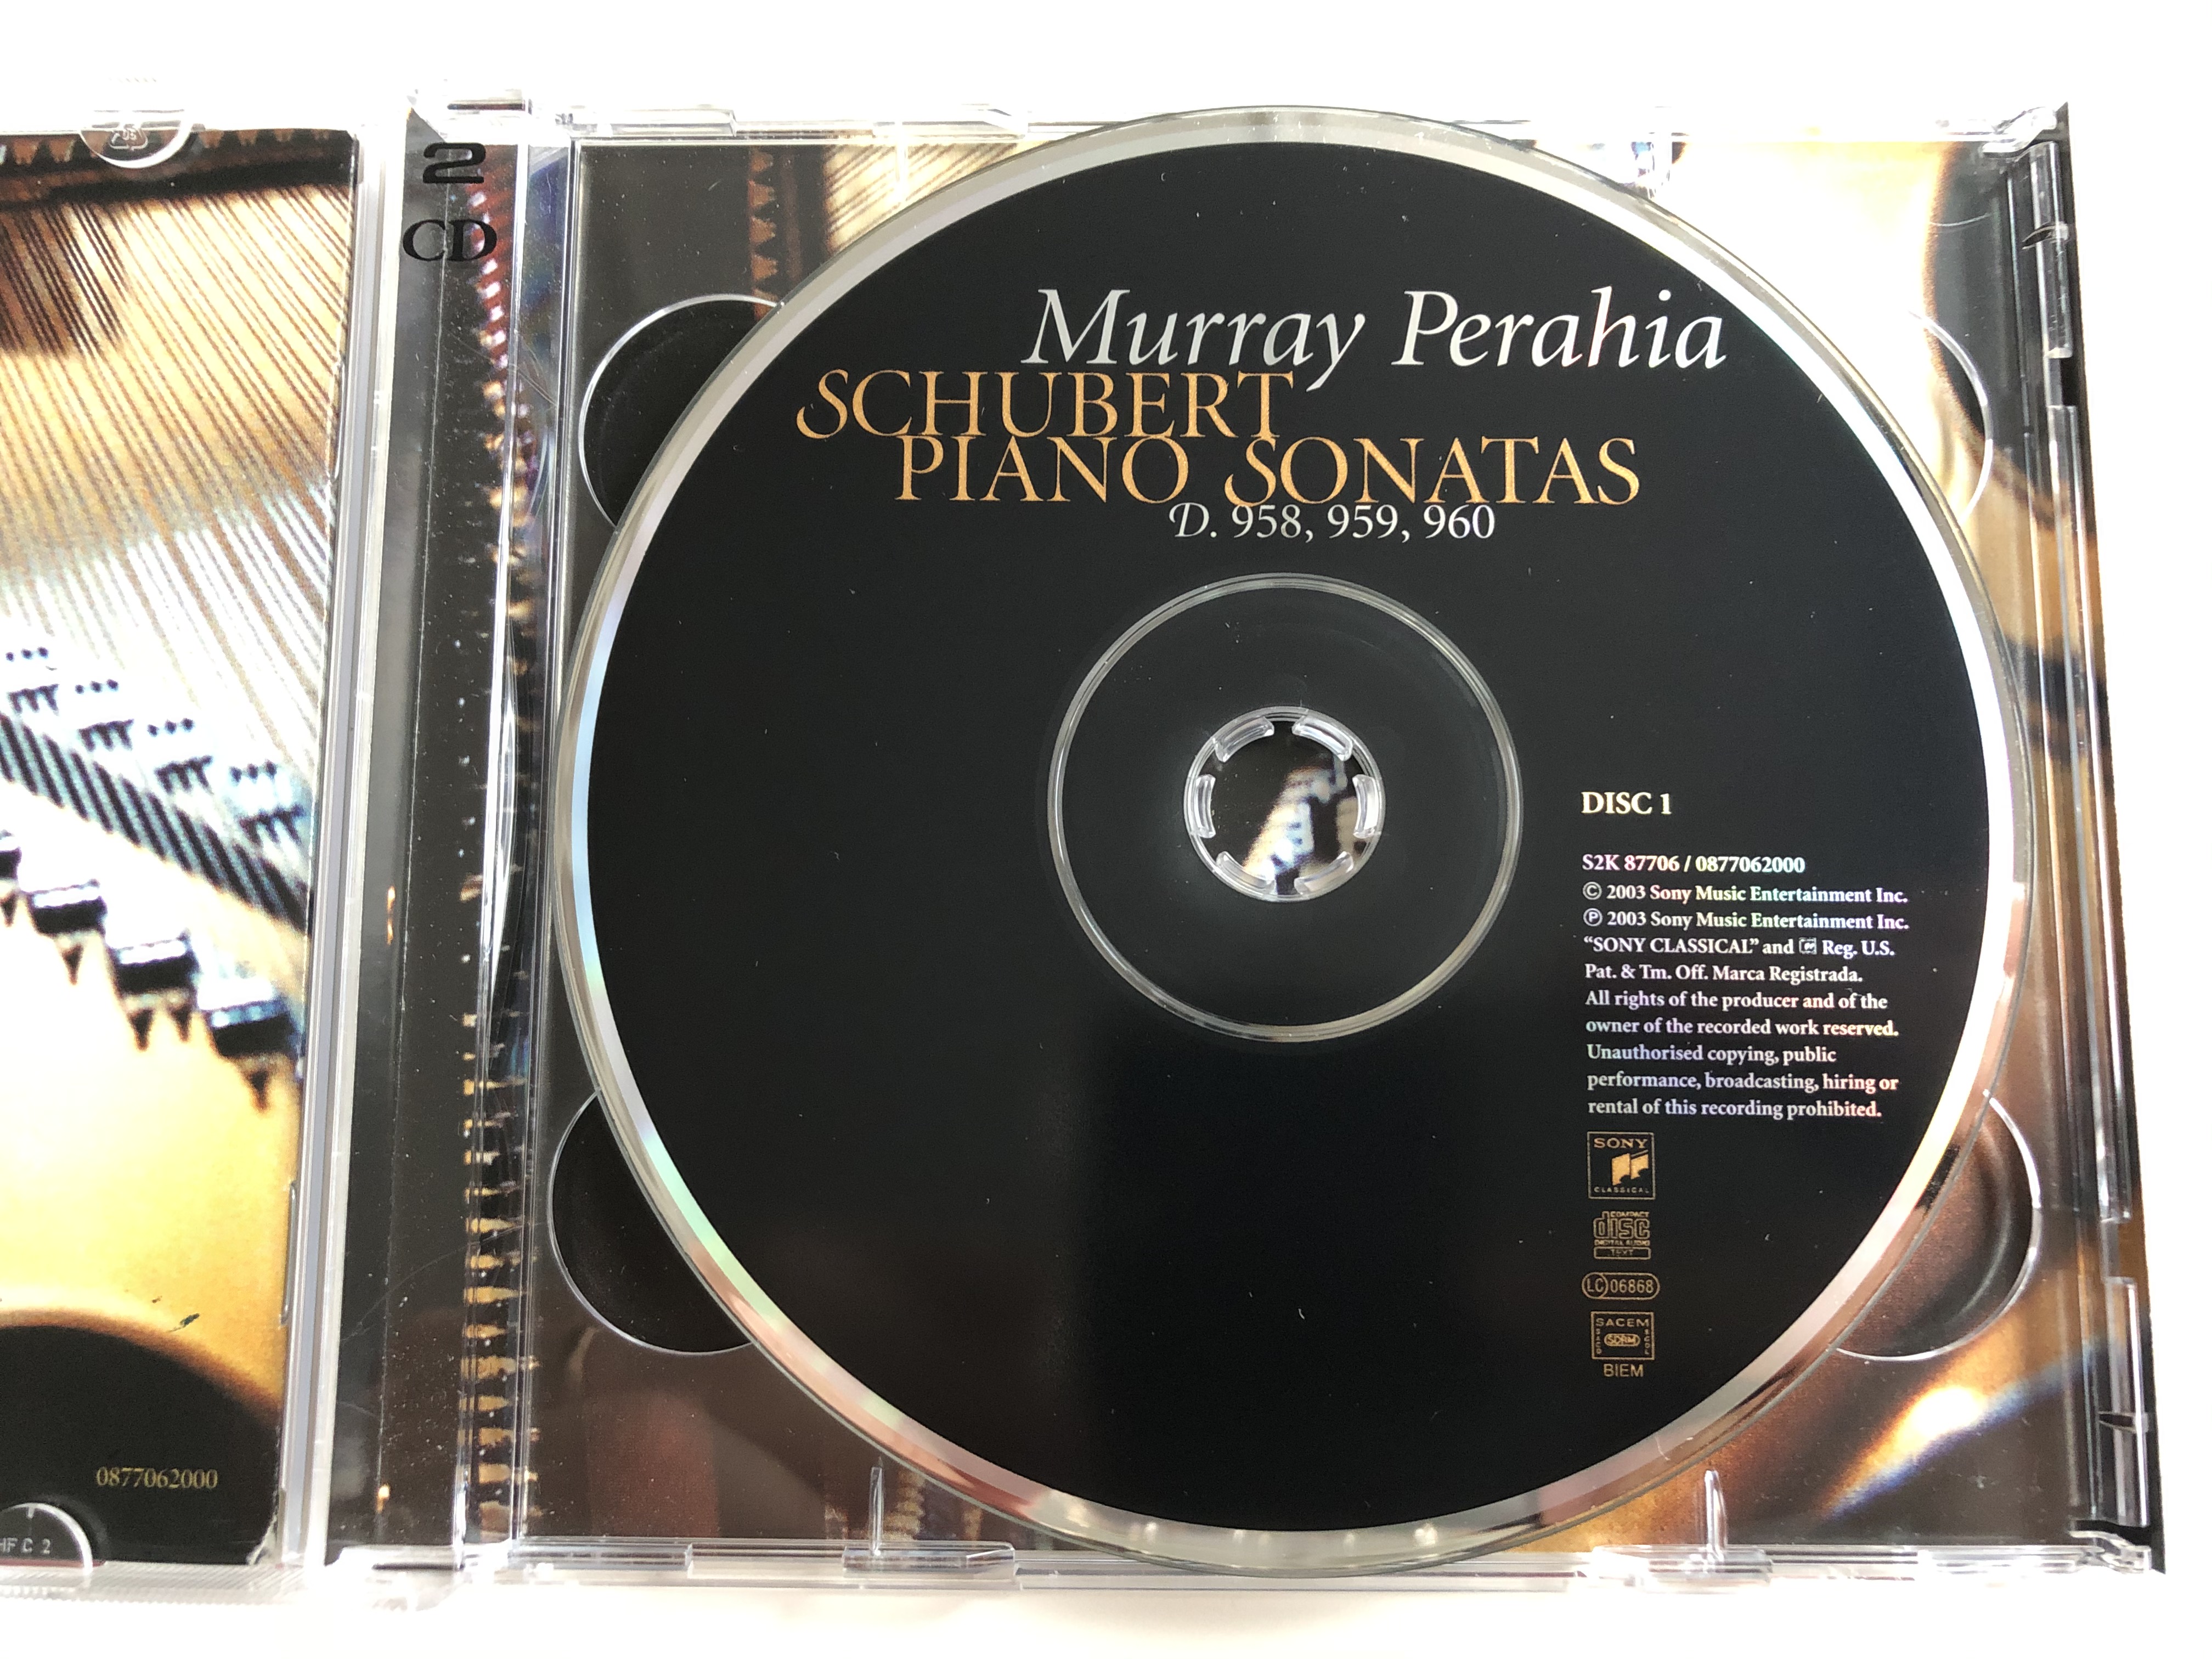 murray-perahia-schubert-piano-sonatas-d.958-959-960-sony-classical-2x-audio-cd-2003-s2k-87706-2-.jpg